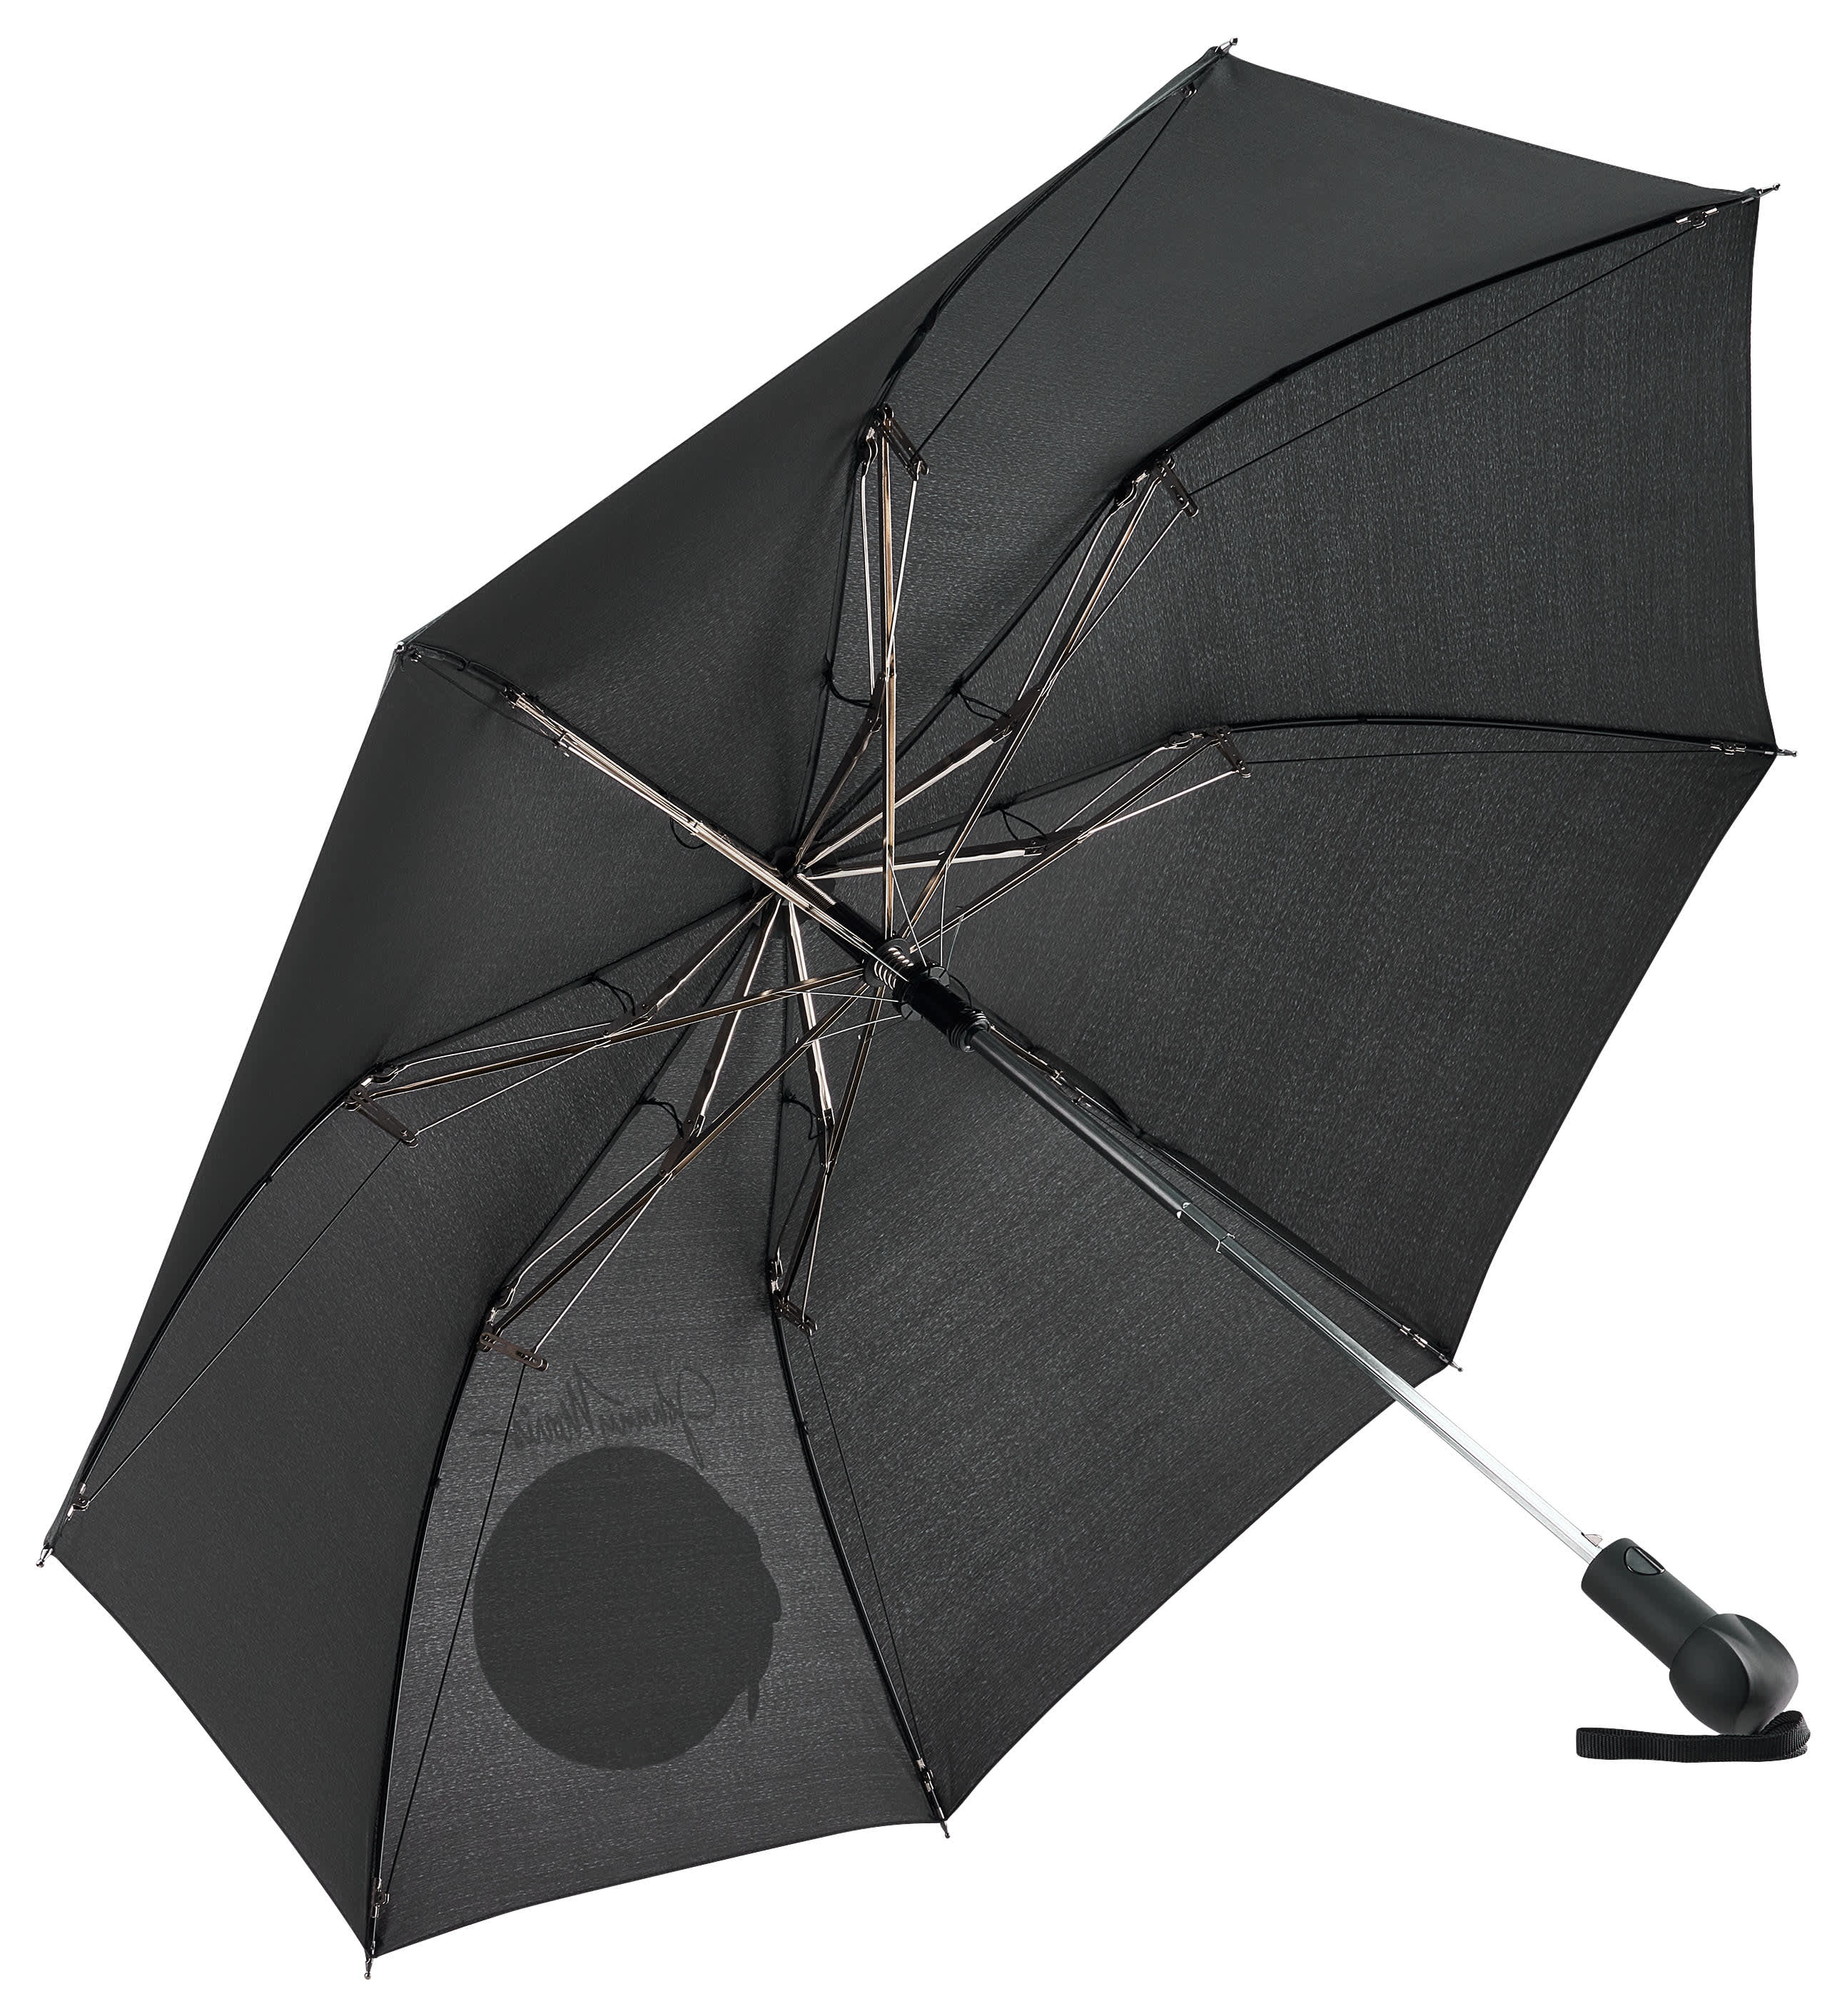 Bass Pro Shops® Automatic Umbrella